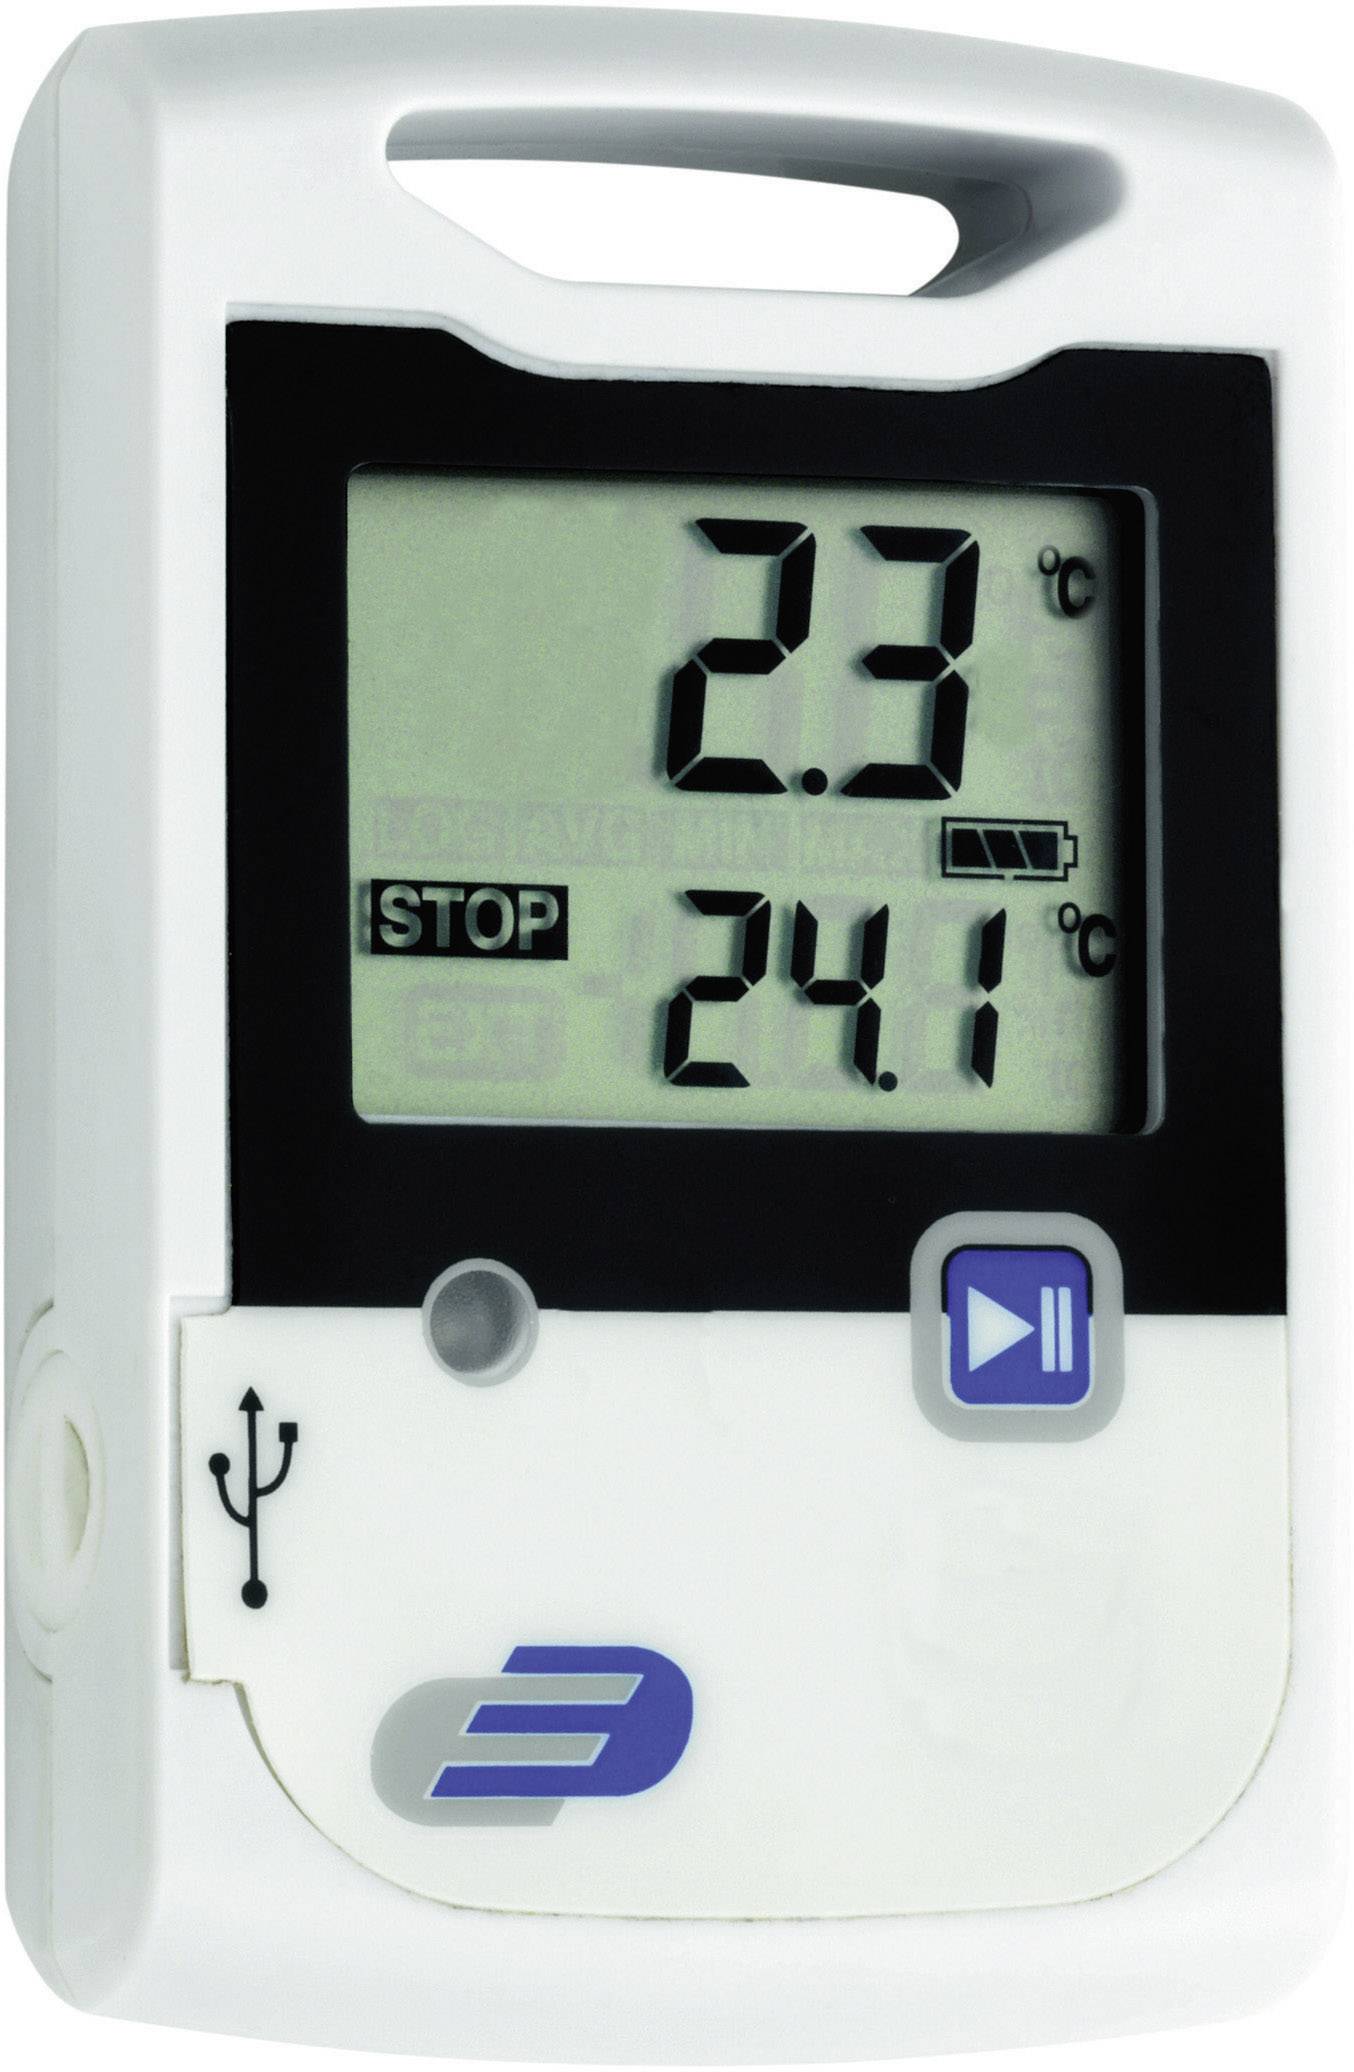 Регистраторы влажности. Rohs часы TFA Dostmann/Wertheim kat. Nr. 60.2004. Датчик температуры и влажности. Логгер для измерения температуры. Даталоггер температуры и влажности.